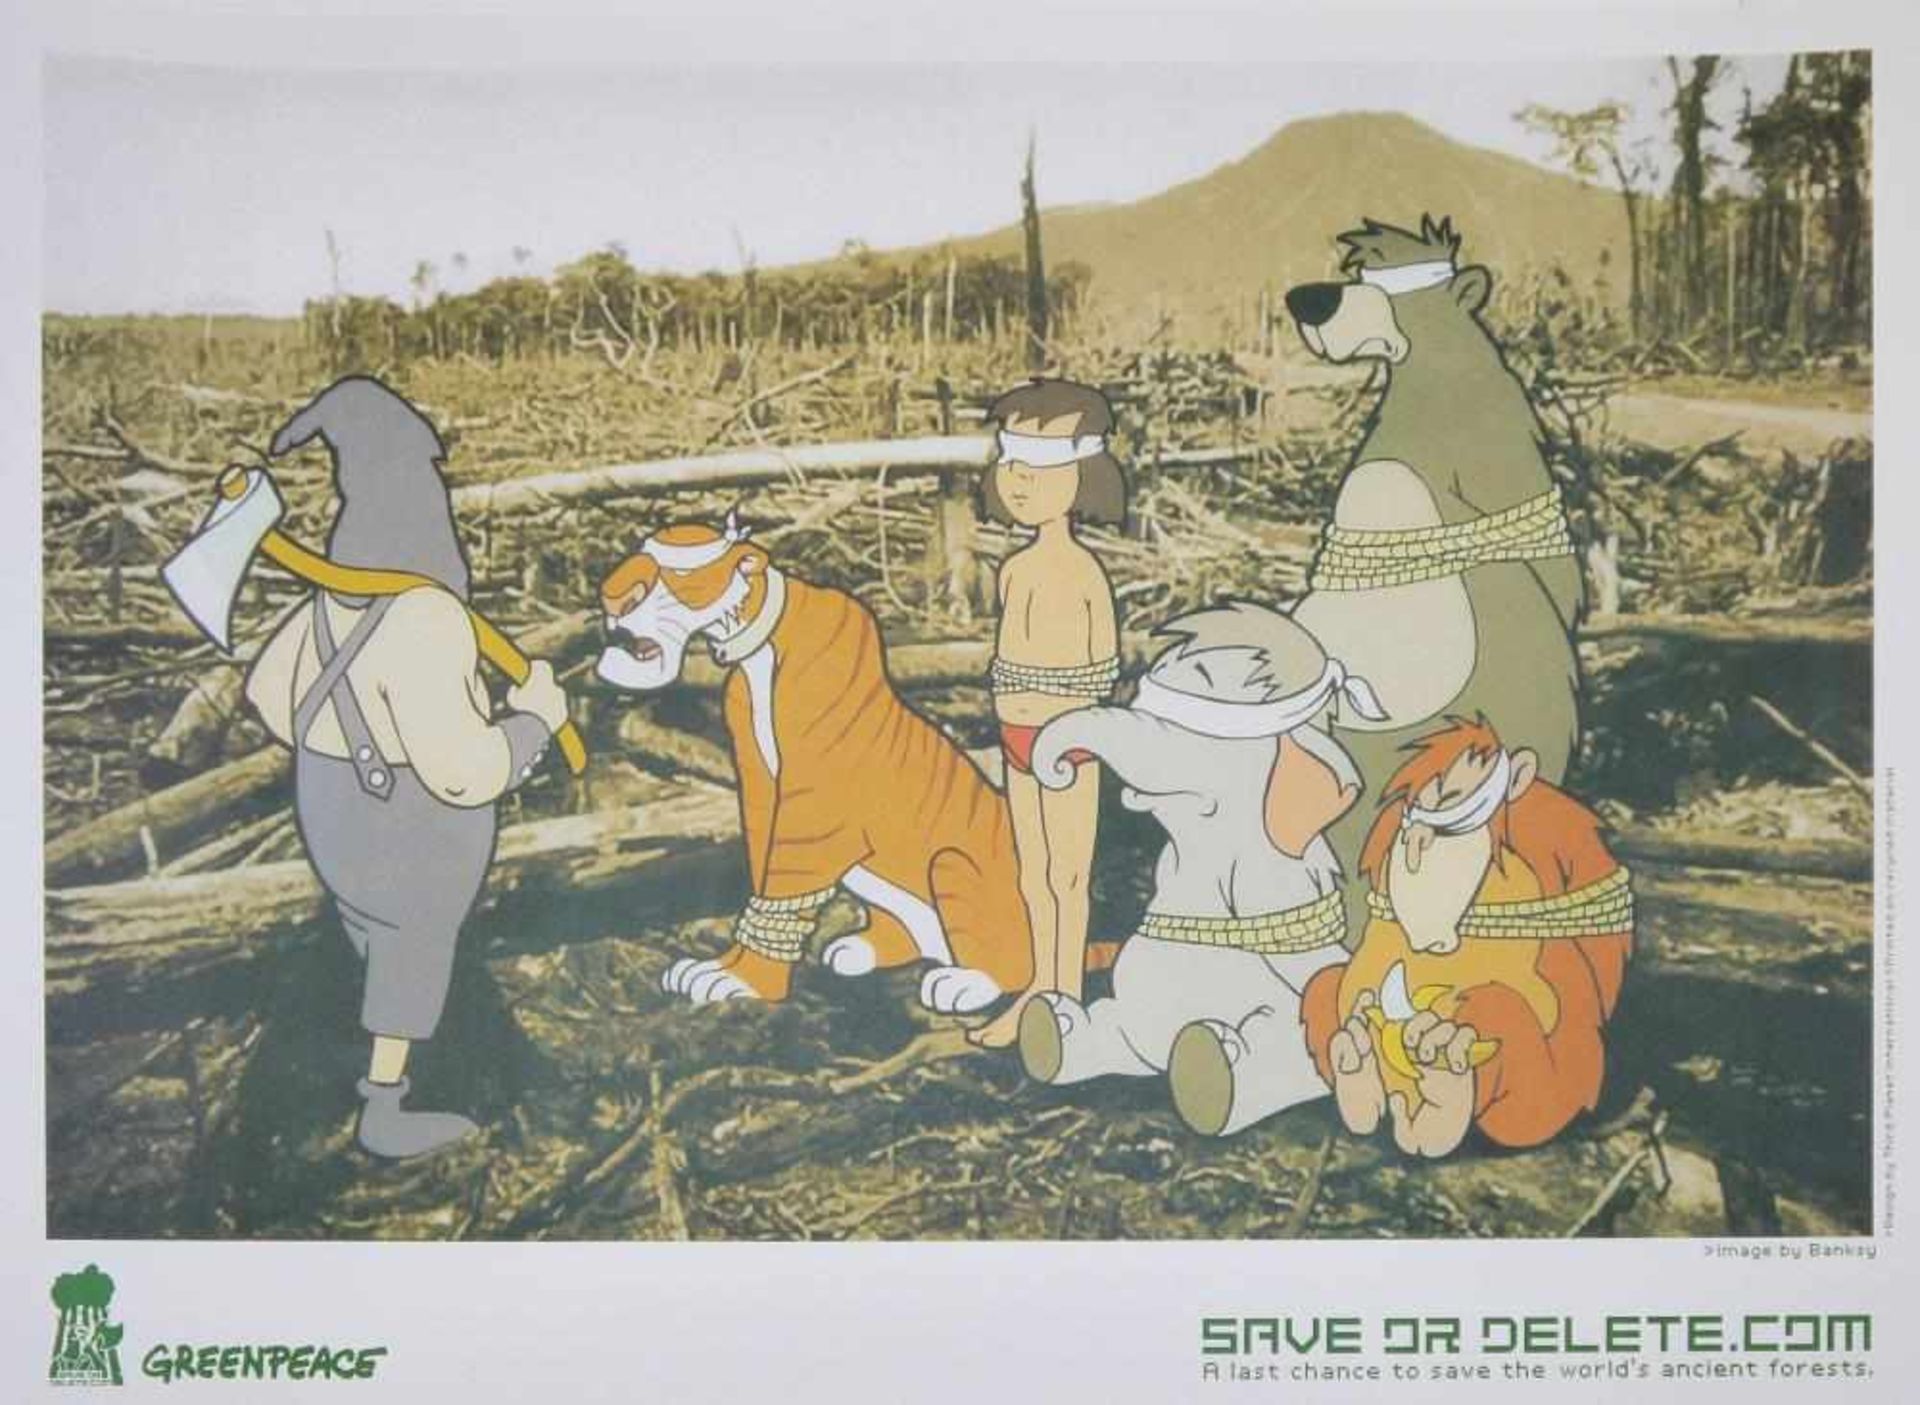 Banksy, „Save or delete.com“, Farboffset, Poster für Greenpeace 2002 & 2x 10-Pfund-Note mit Portrait - Bild 3 aus 3